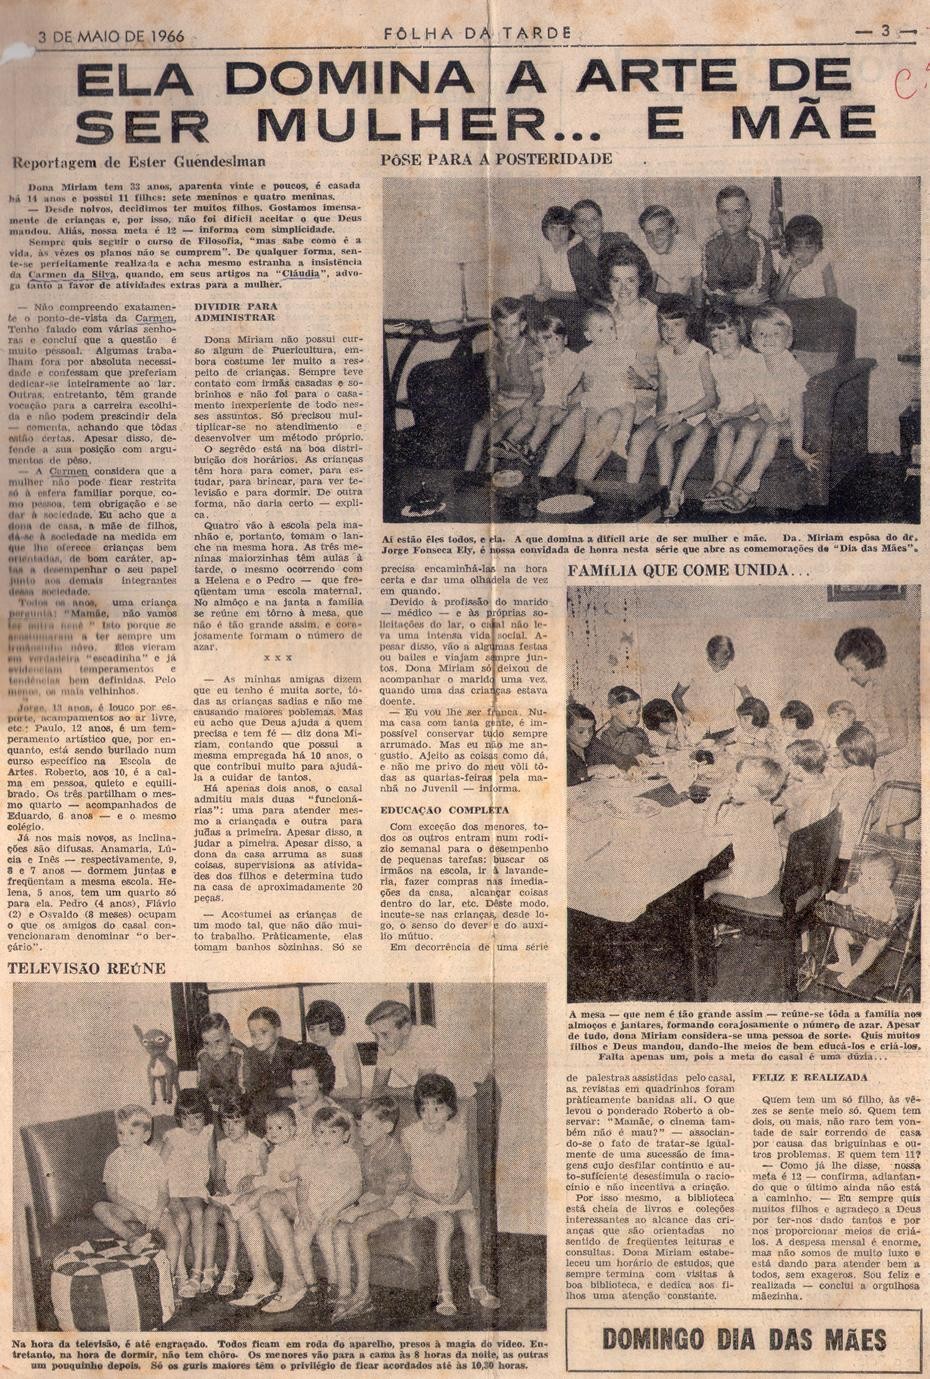 03 de Maio de 1966 - Folha da Tarde. Ela domina a arte de ser mulher... e mãe.